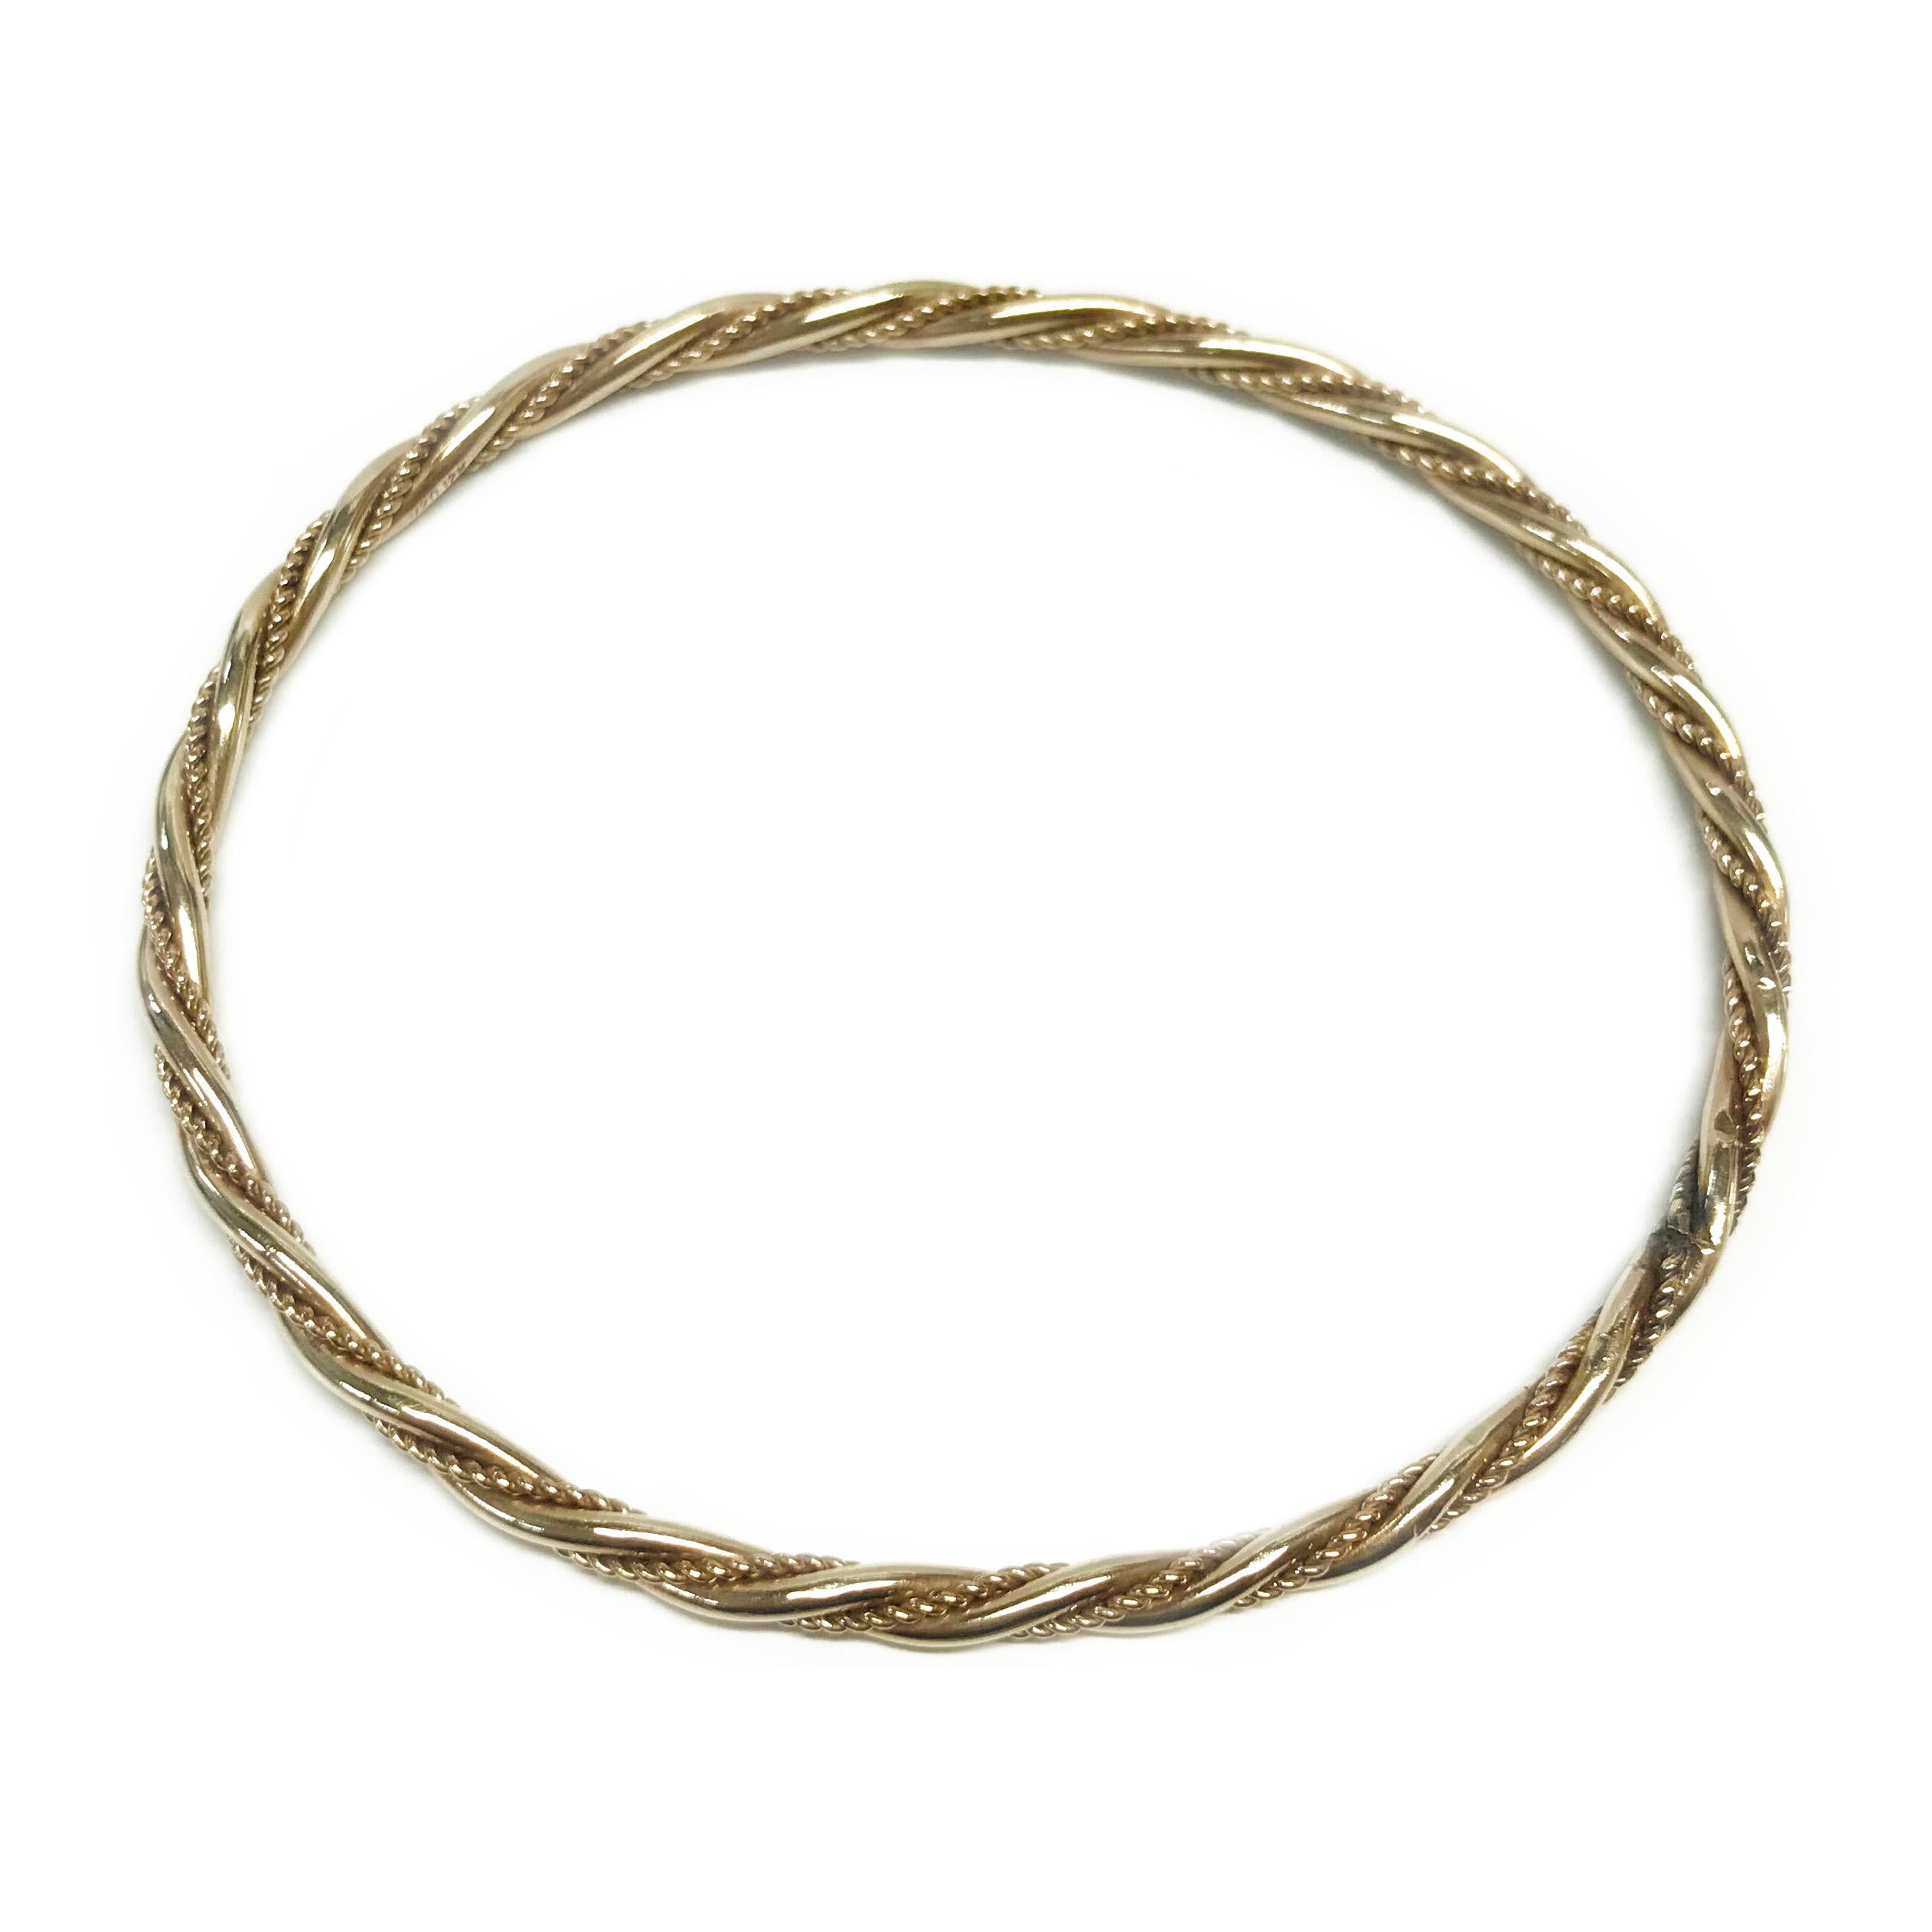 Bracelet torsadé semi-ovale en or jaune 14 carats. Le bracelet se compose de deux tubes tordus ensemble, l'un à finition lisse, l'autre à texture de corde. Le bracelet mesure 2 7/8